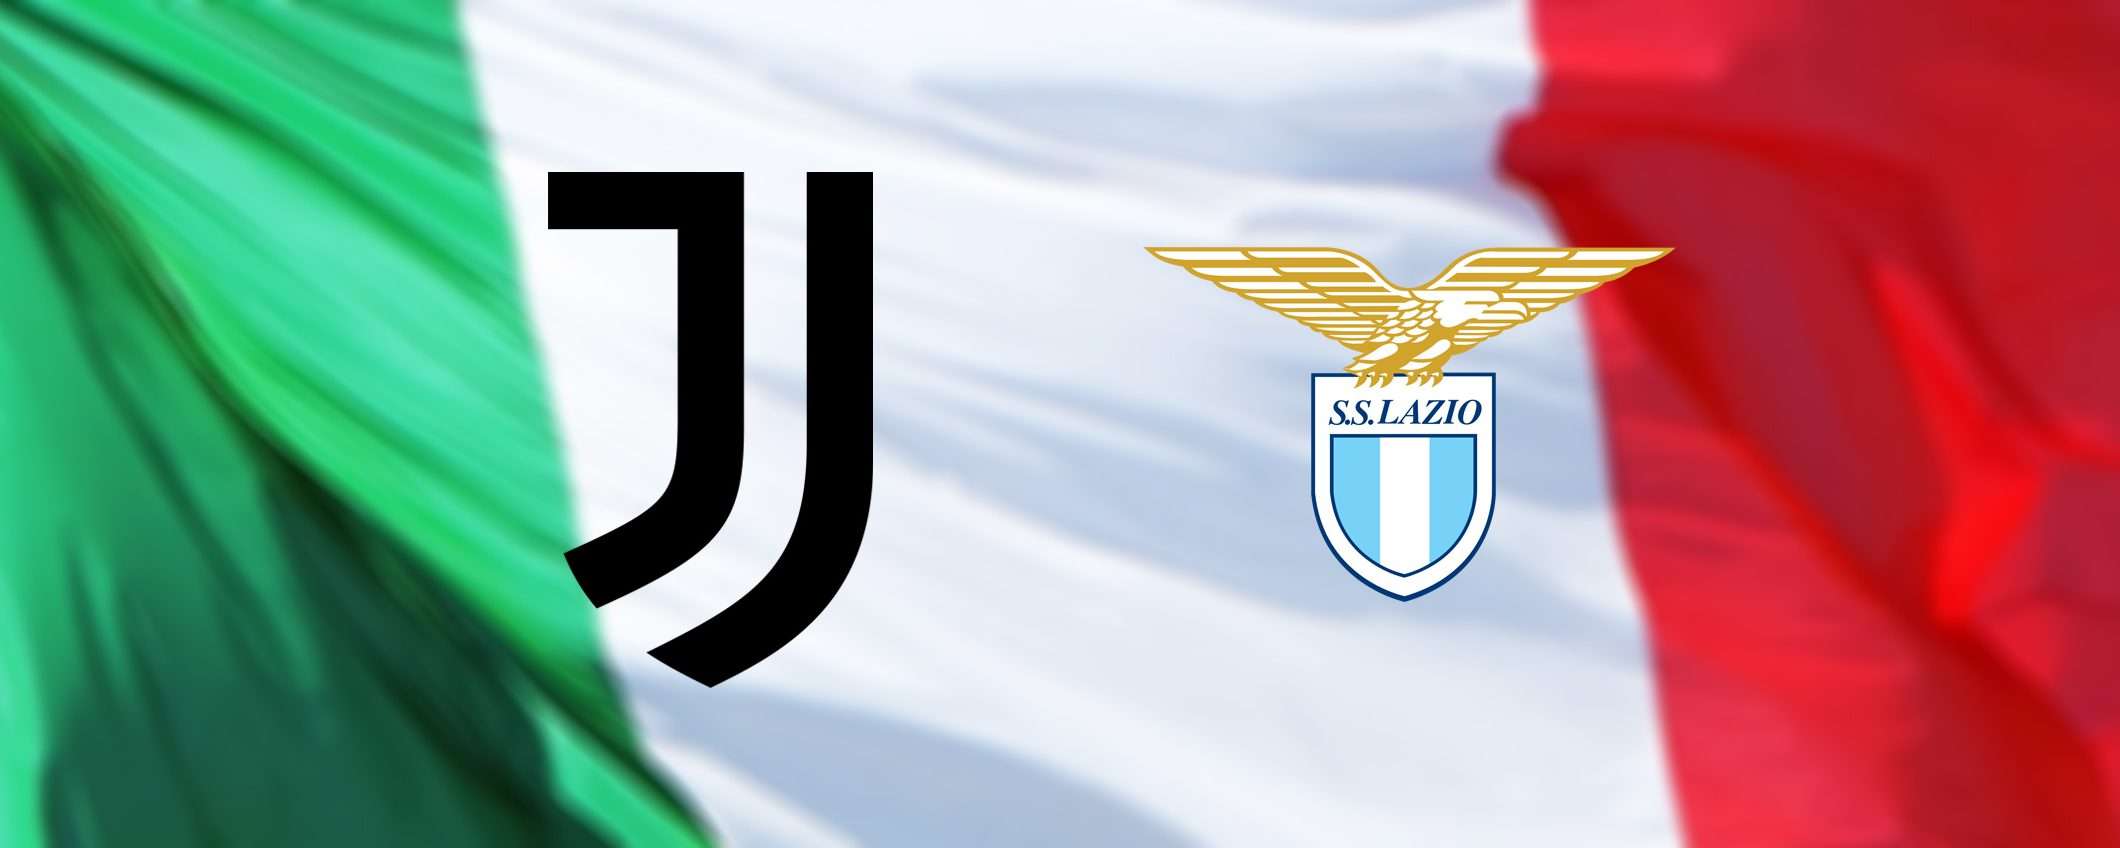 Coppa Italia: come vedere Juventus-Lazio in streaming